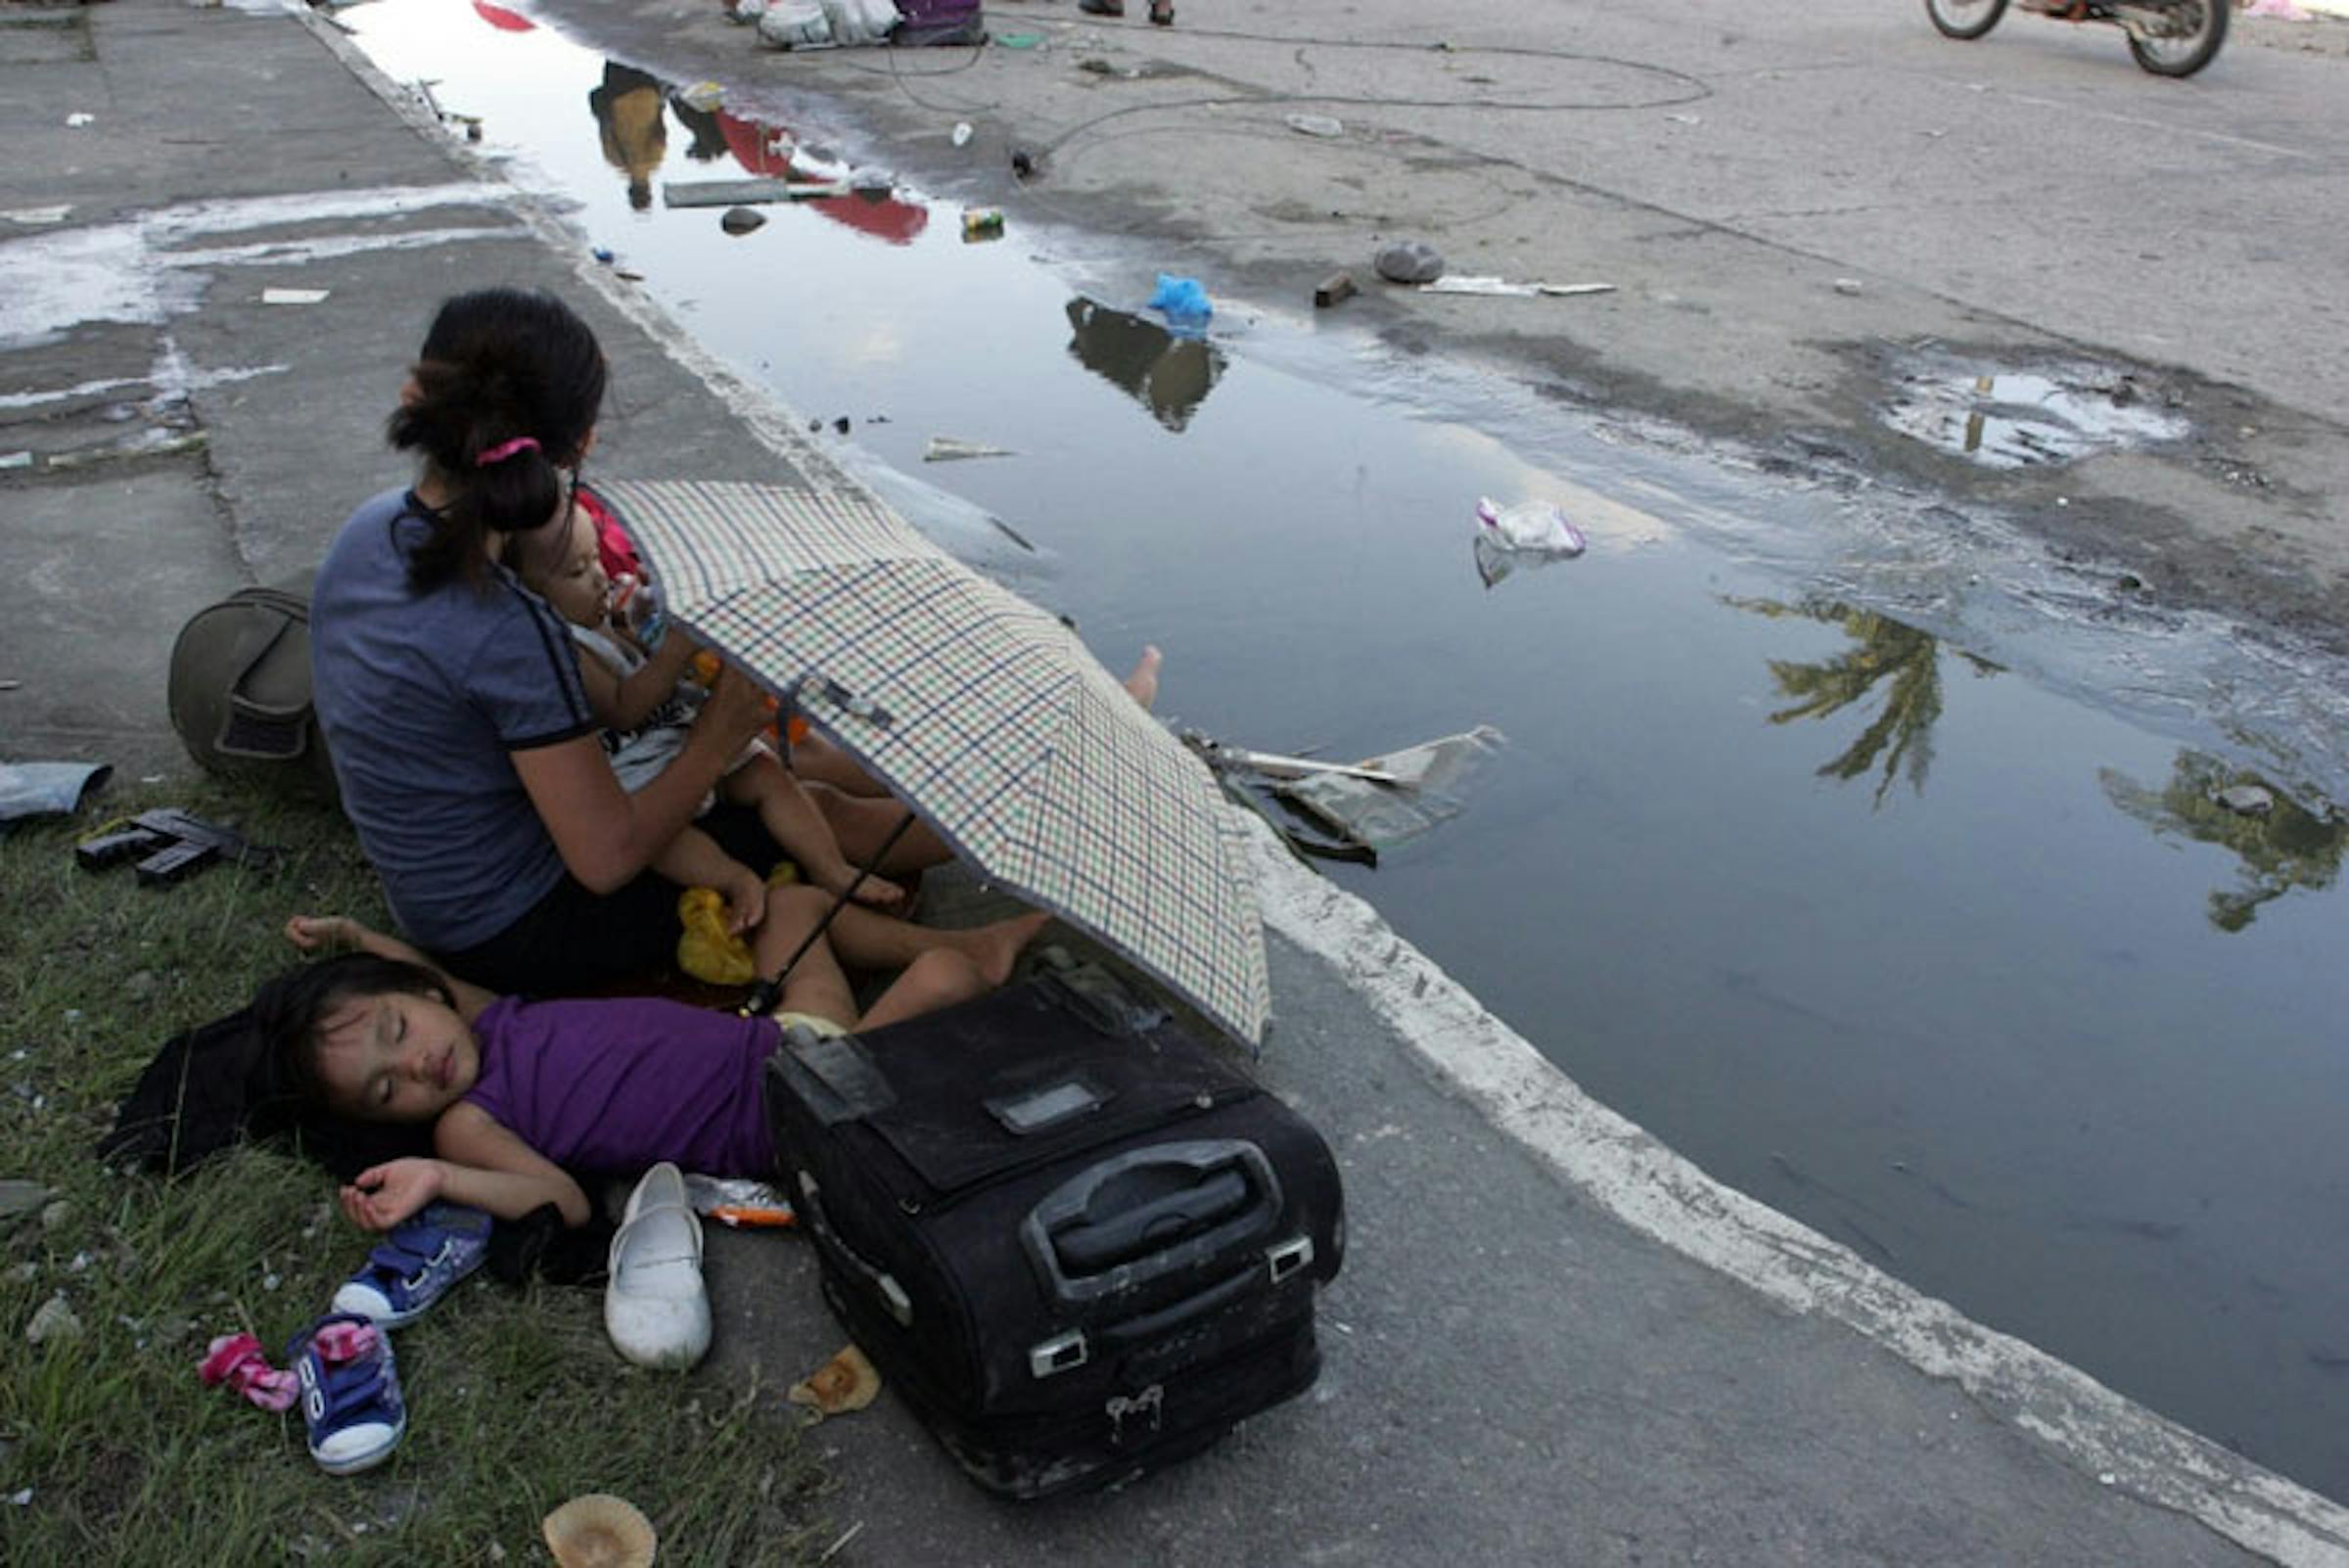 Madre e figli a Tacloban City, Filippine. Sono almeno 100.000 i bambini sotto i 5 anni senza tetto nelle aree colpite dal tifone Haiyan - ©UNICEF/NYHQ2013-0995/J.Maitem